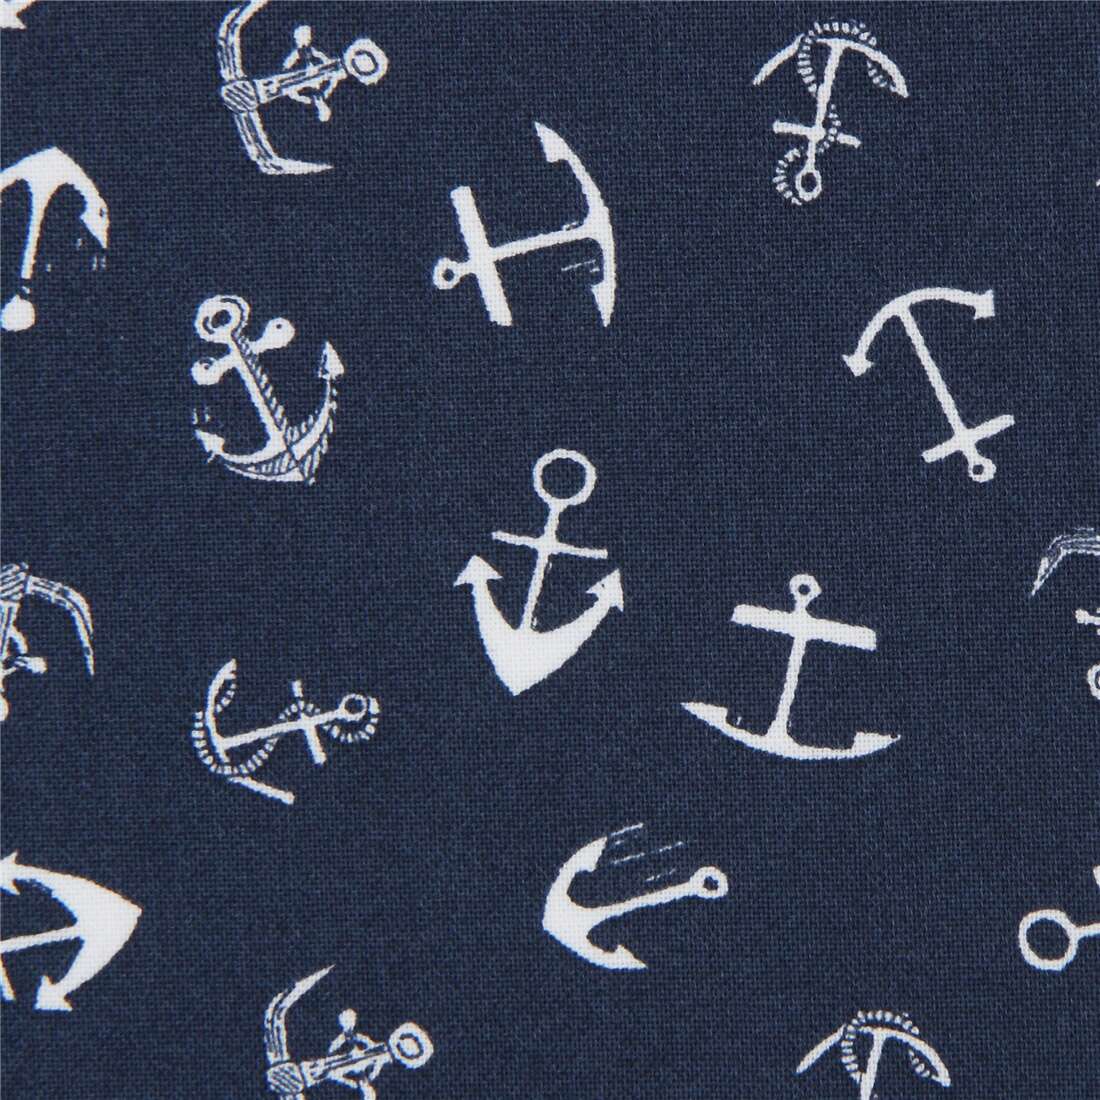 Hello Sailor Drop Anchor Fabric by Dear Stella 483 FQ navy blue white material 